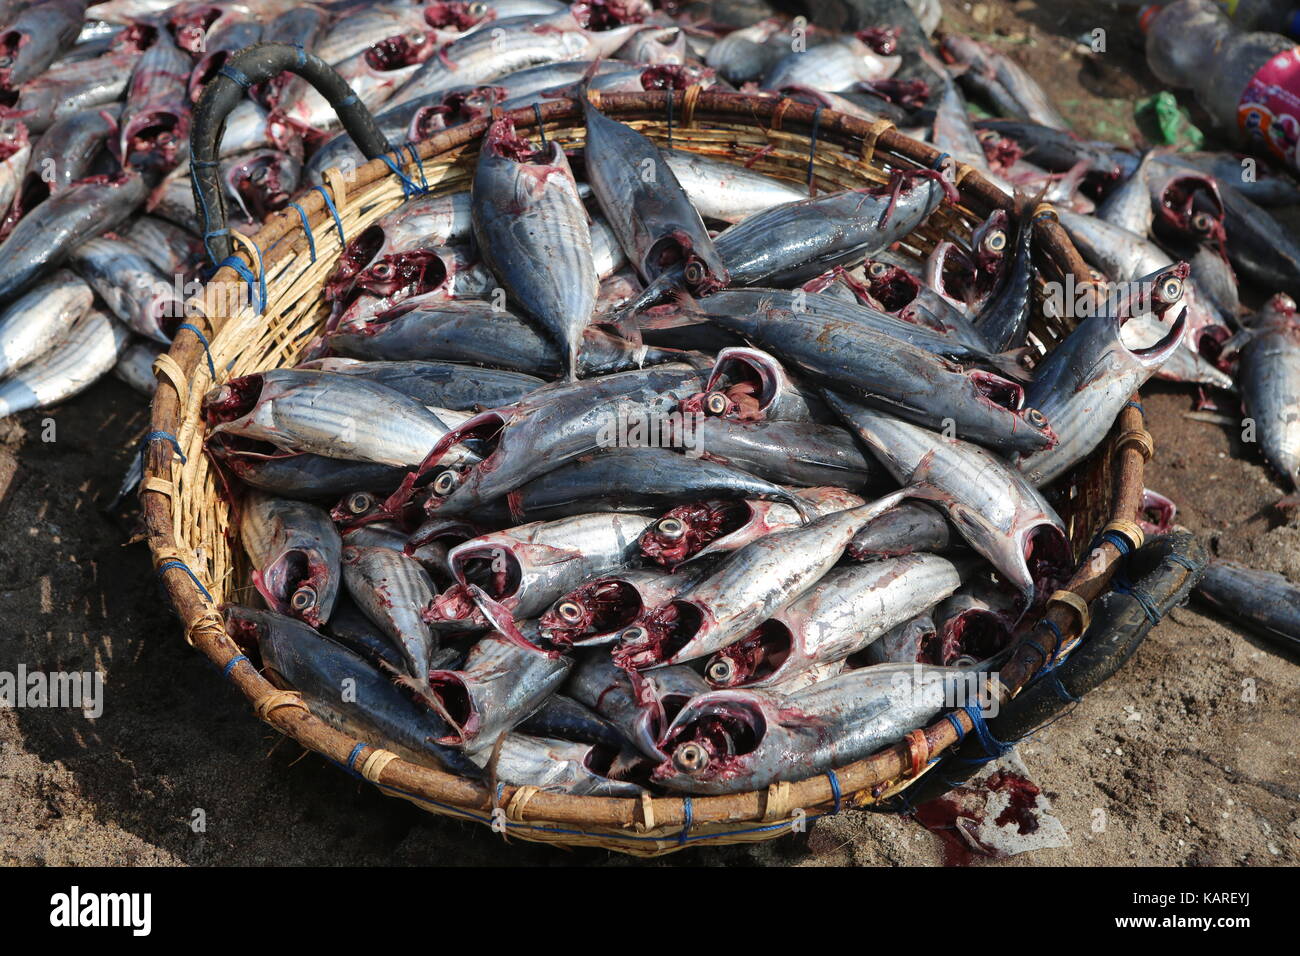 Procesado de pescado después de la captura en una cesta --- Fische verarbeitet nach Fang en einem Korb Foto de stock